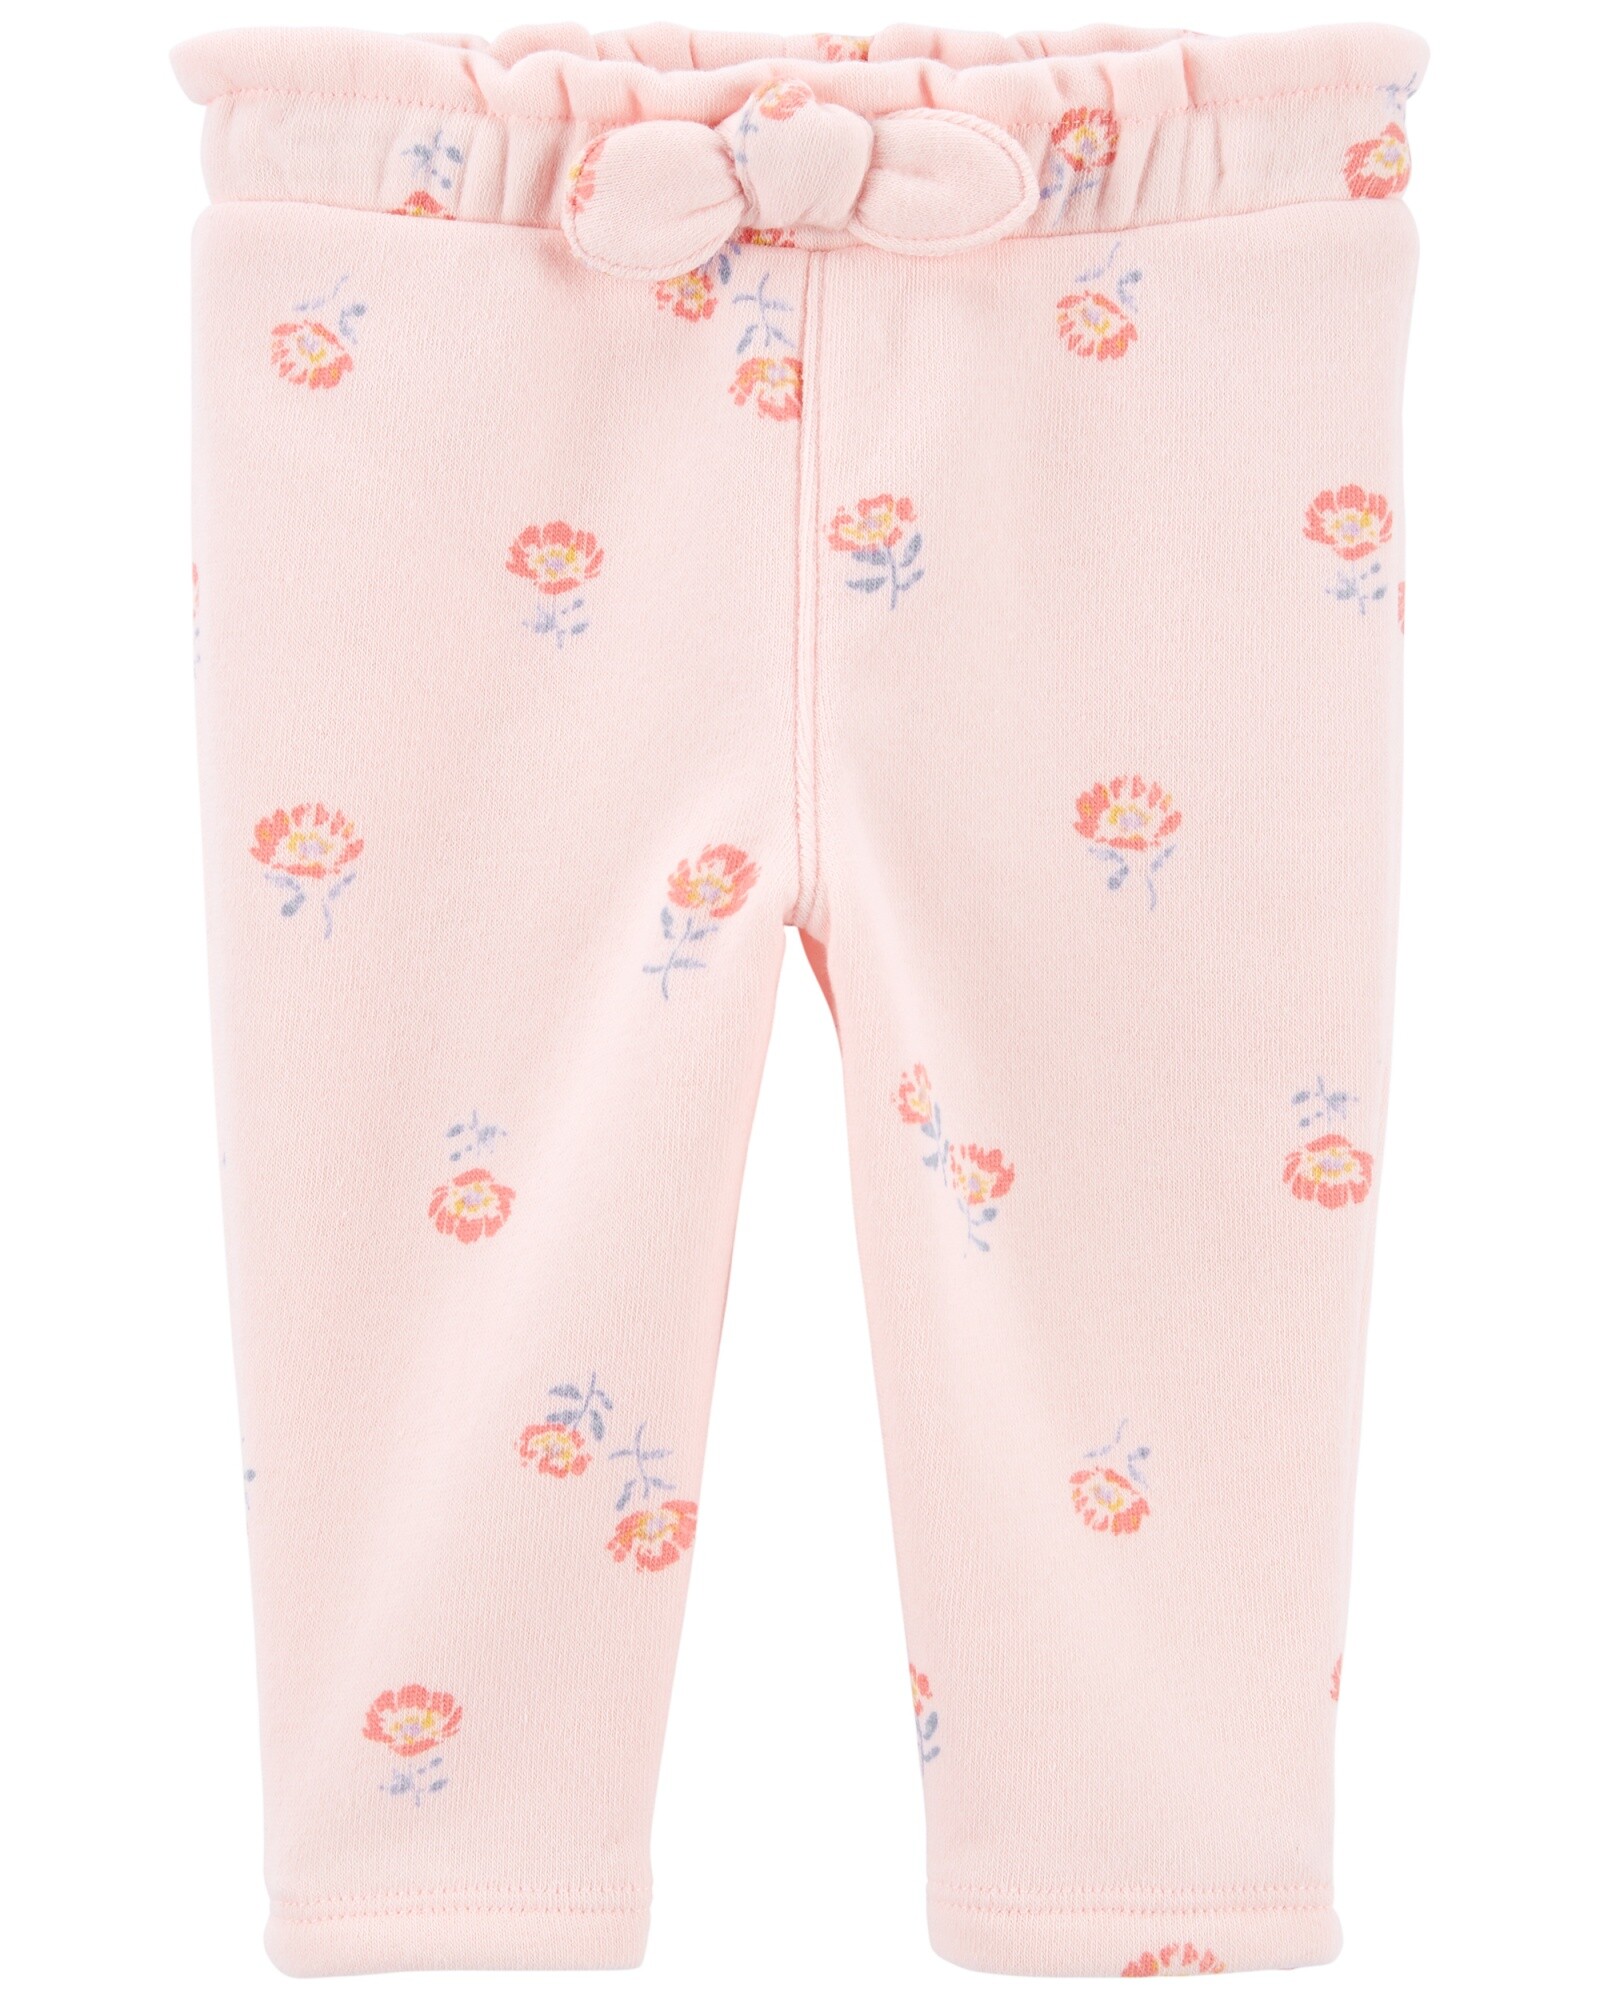 Pantalón de algodón con felpa con moña diseño flores 0